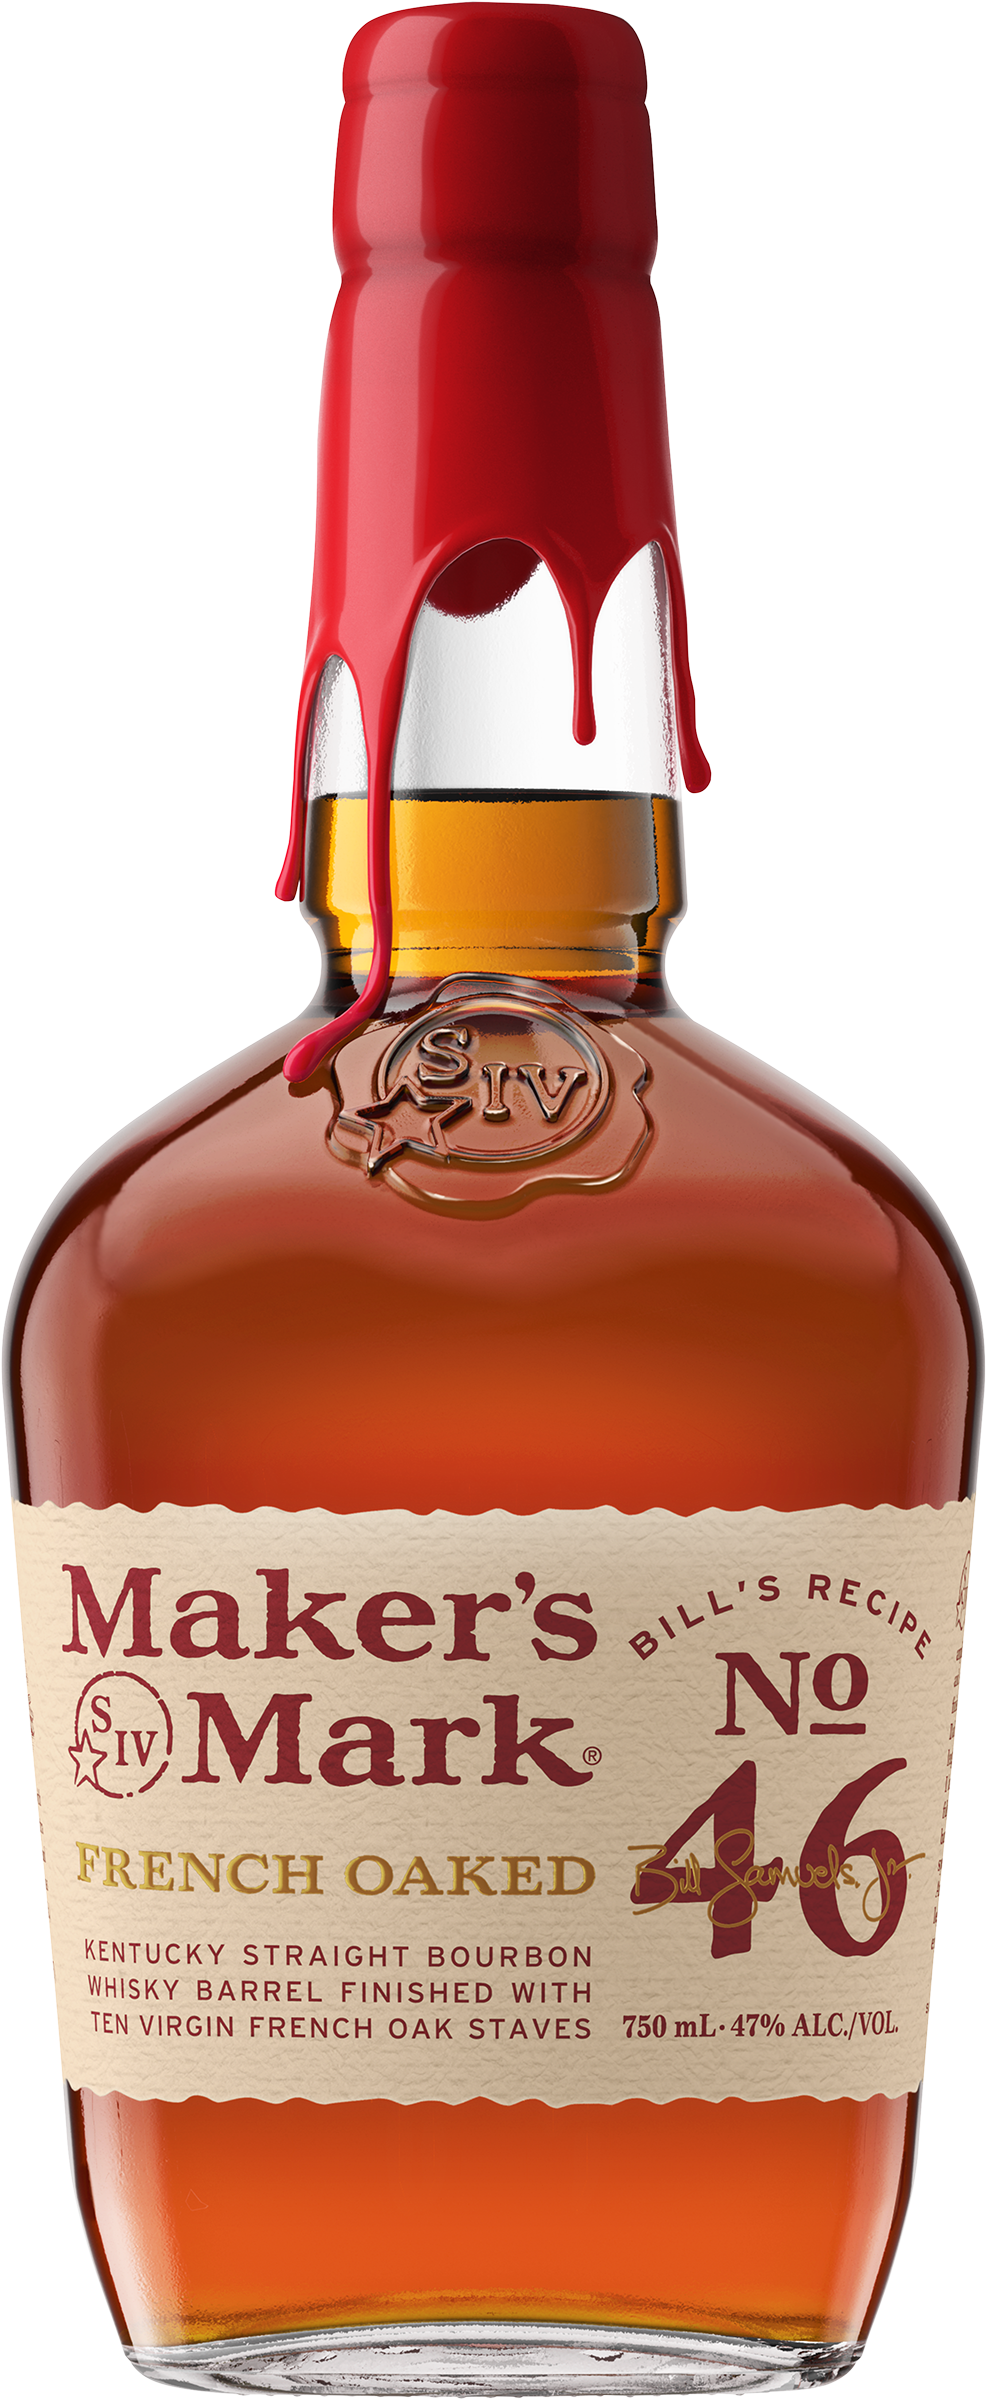 Buy Maker's Mark Bourbon Whisky, 750mL Online India